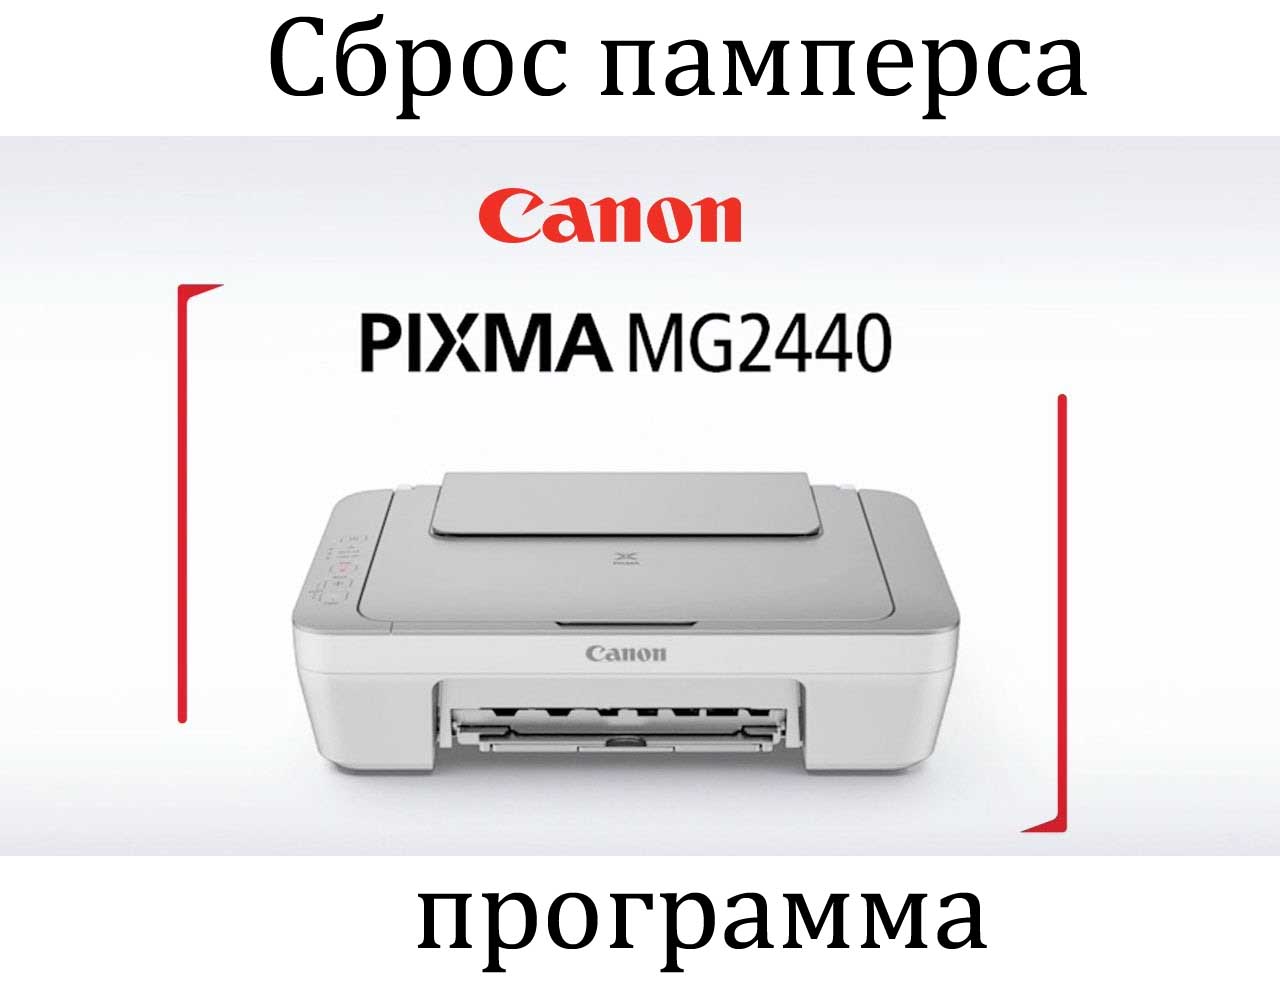 Сброс памперса canon pixma. Принтер Canon PIXMA 2440. Принтер Canon PIXMA mg2440. Canon mg2440 картриджи. Canon PIXMA mg2440 картриджи.